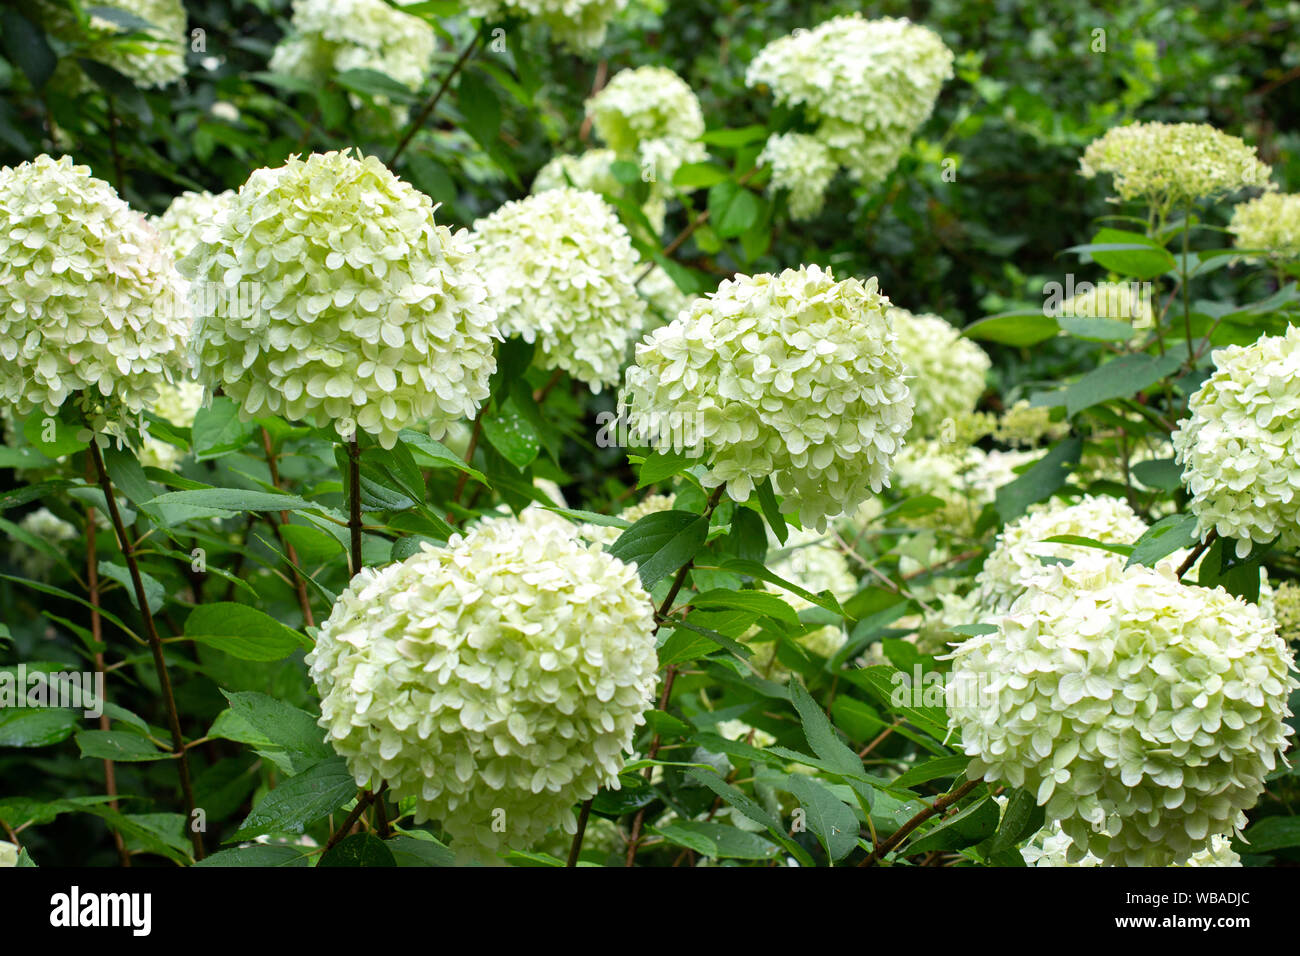 White caps fleurs buissons d'hortensias, blanc vert grandes inflorescences  dans la nature Photo Stock - Alamy